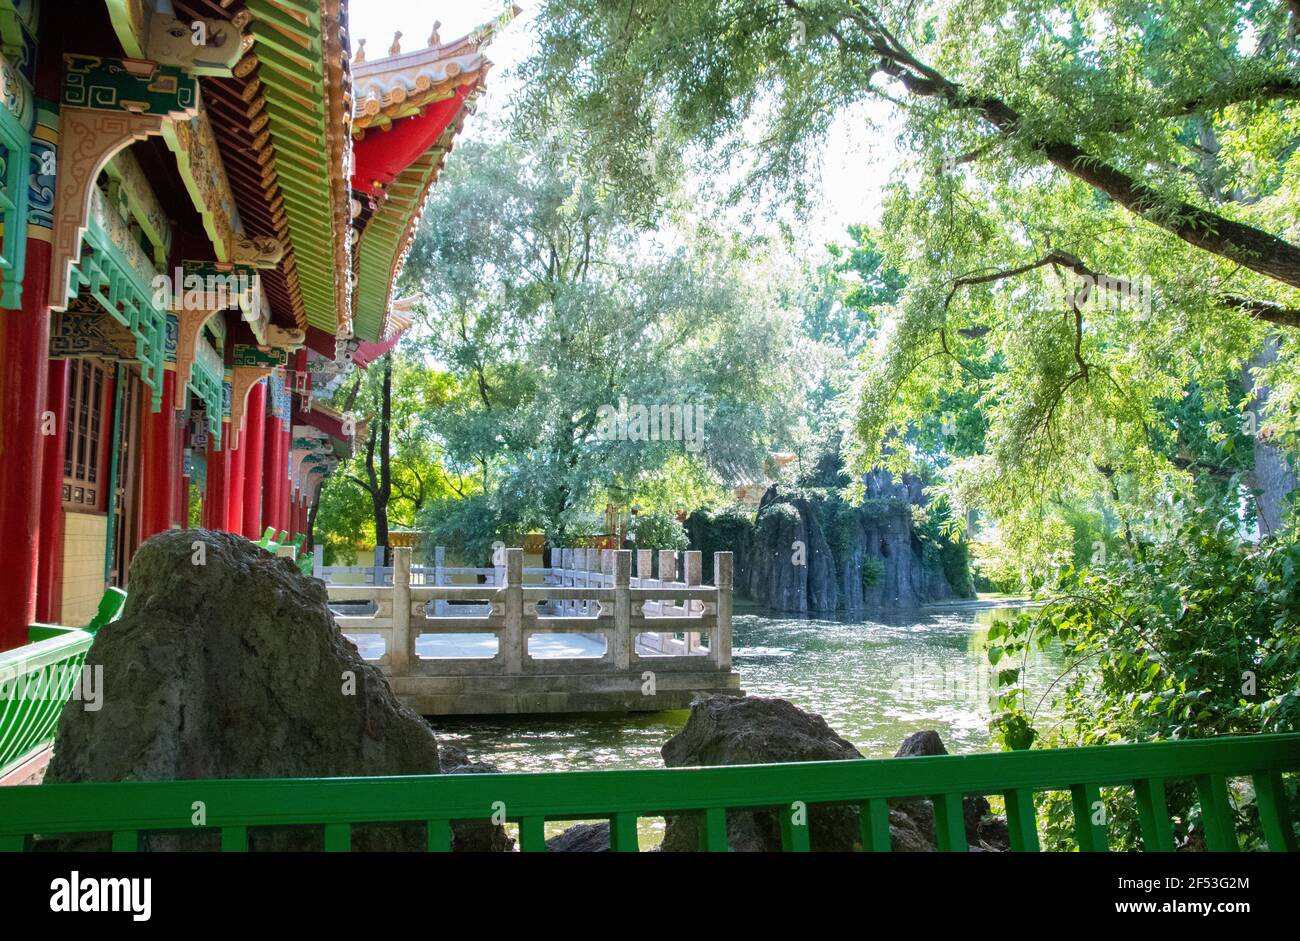 Il Giardino Cinese Tedesco: Chinagarten è un giardino cinese nella città svizzera di Zürich, si trova nel quartiere di Seefeld, è una città partner cinese regalo Foto Stock